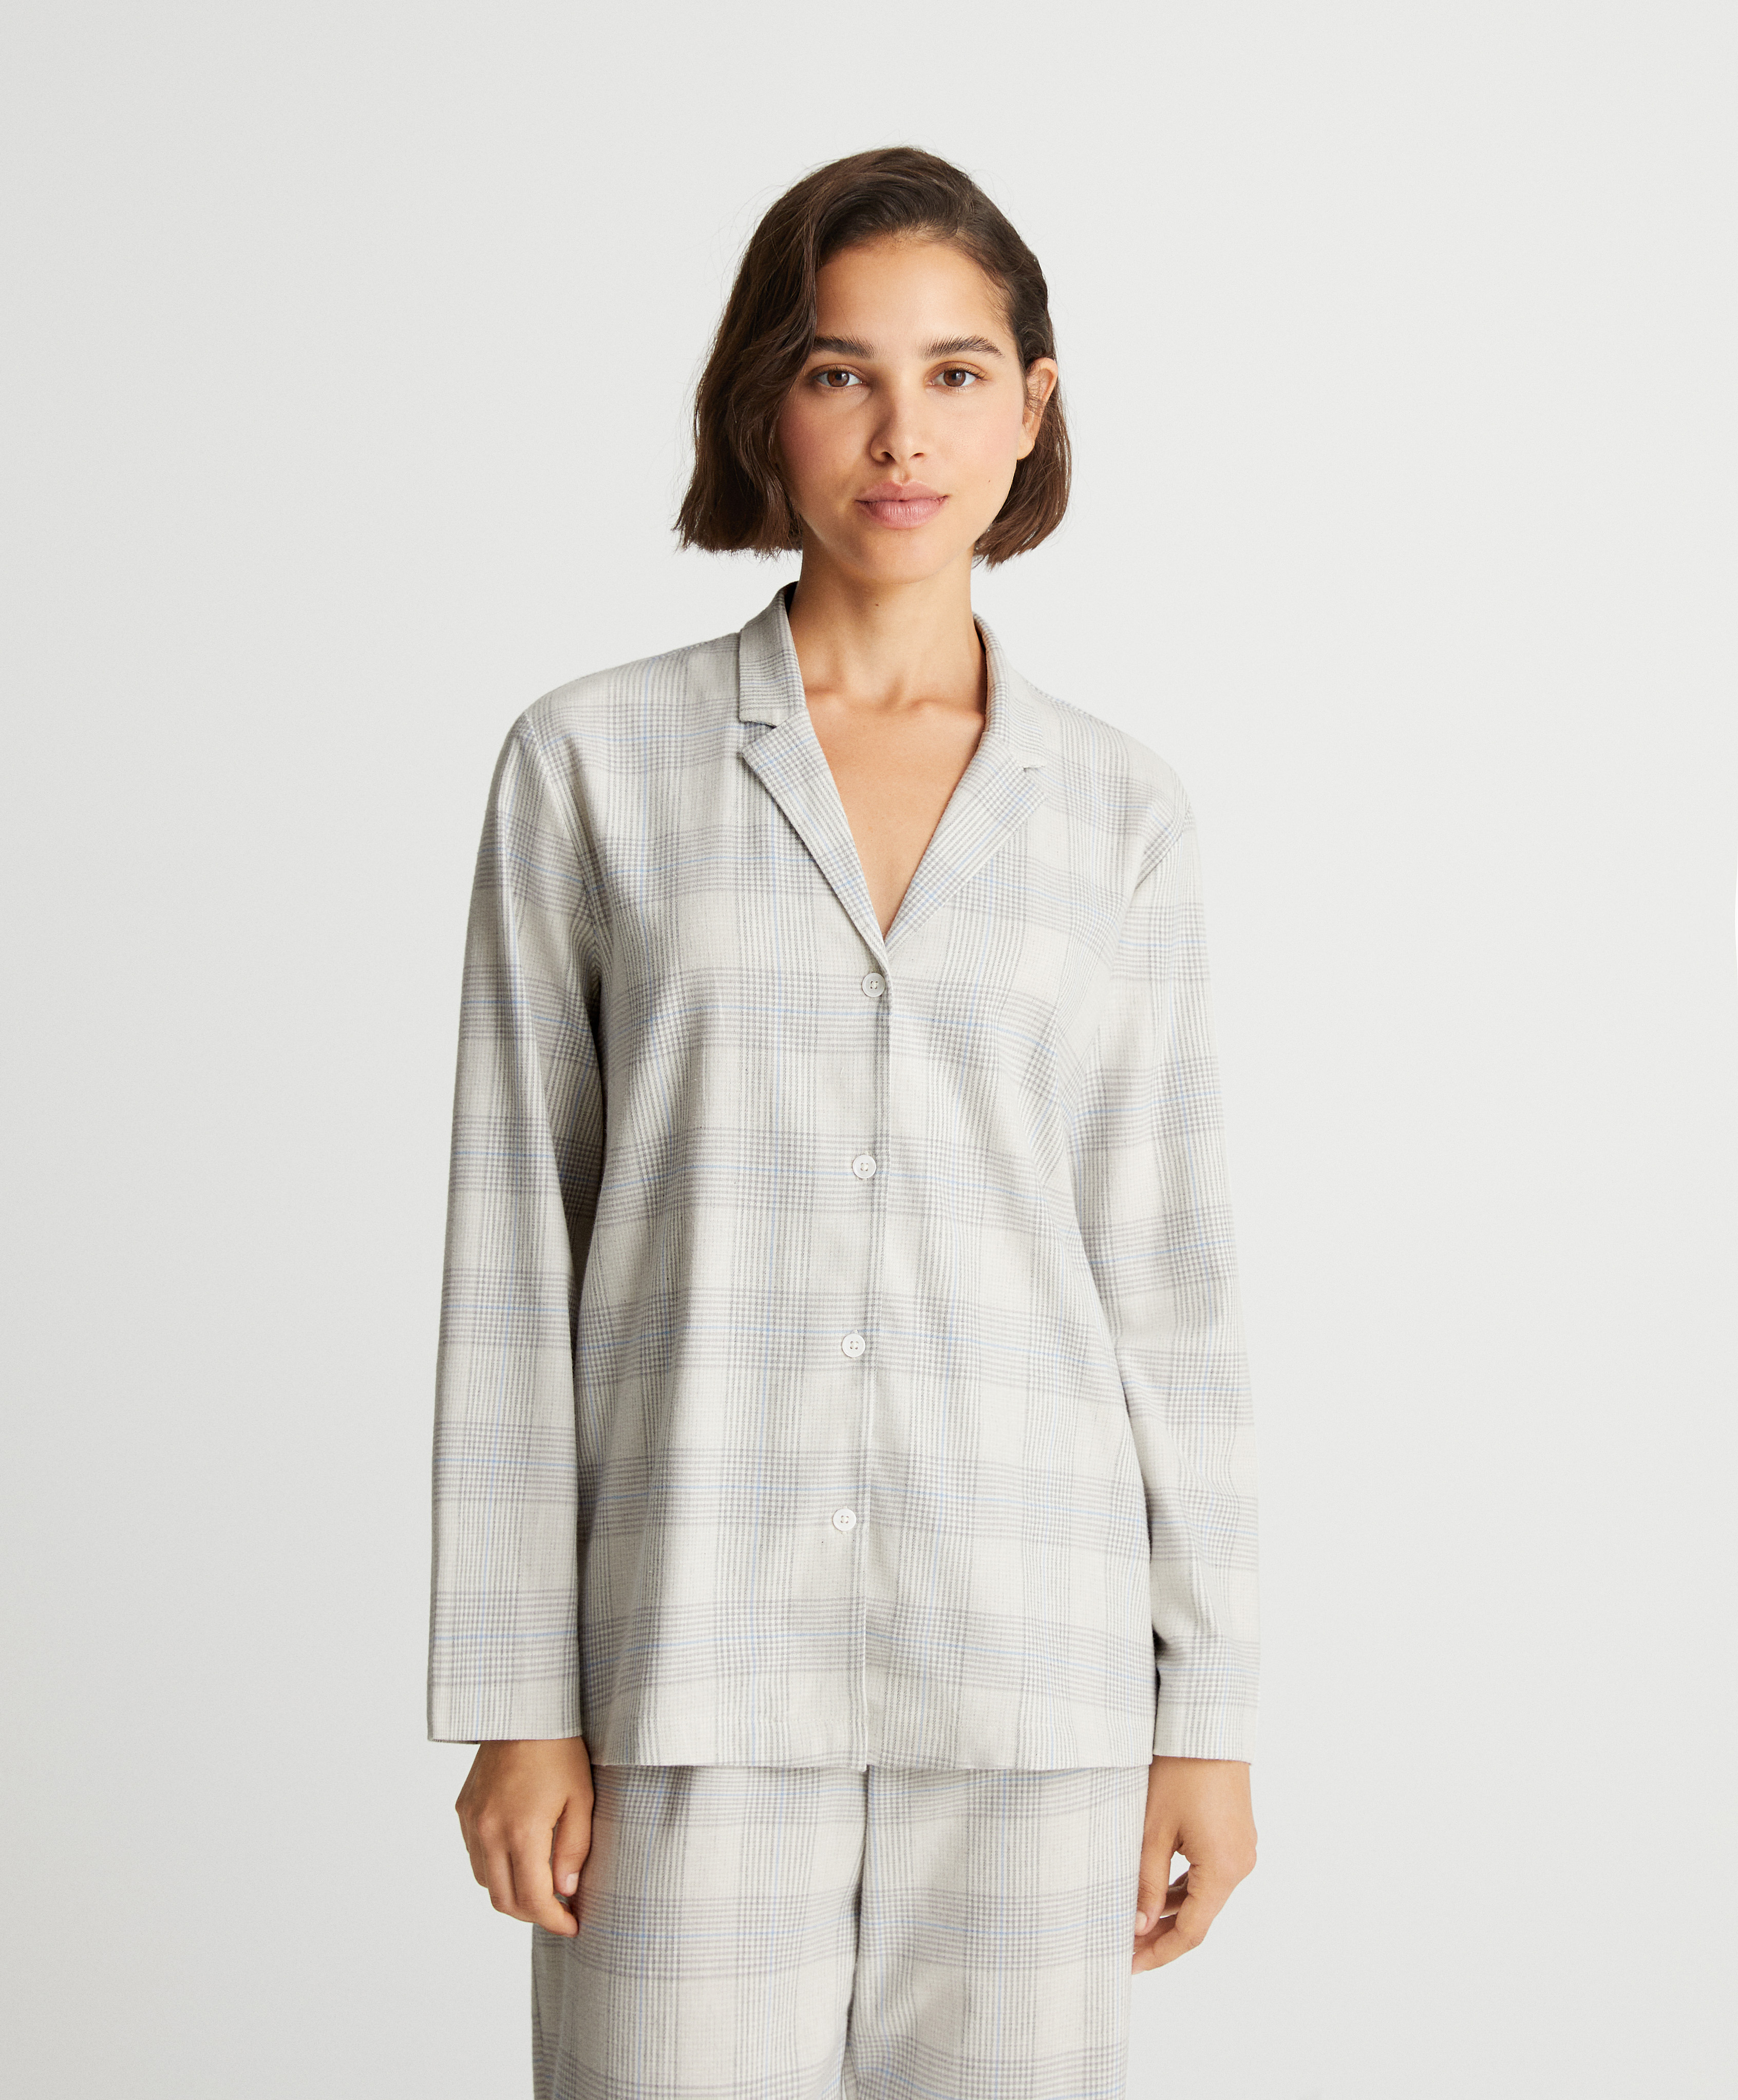 Camicia del pigiama a manica lunga a quadri in cotone elastico